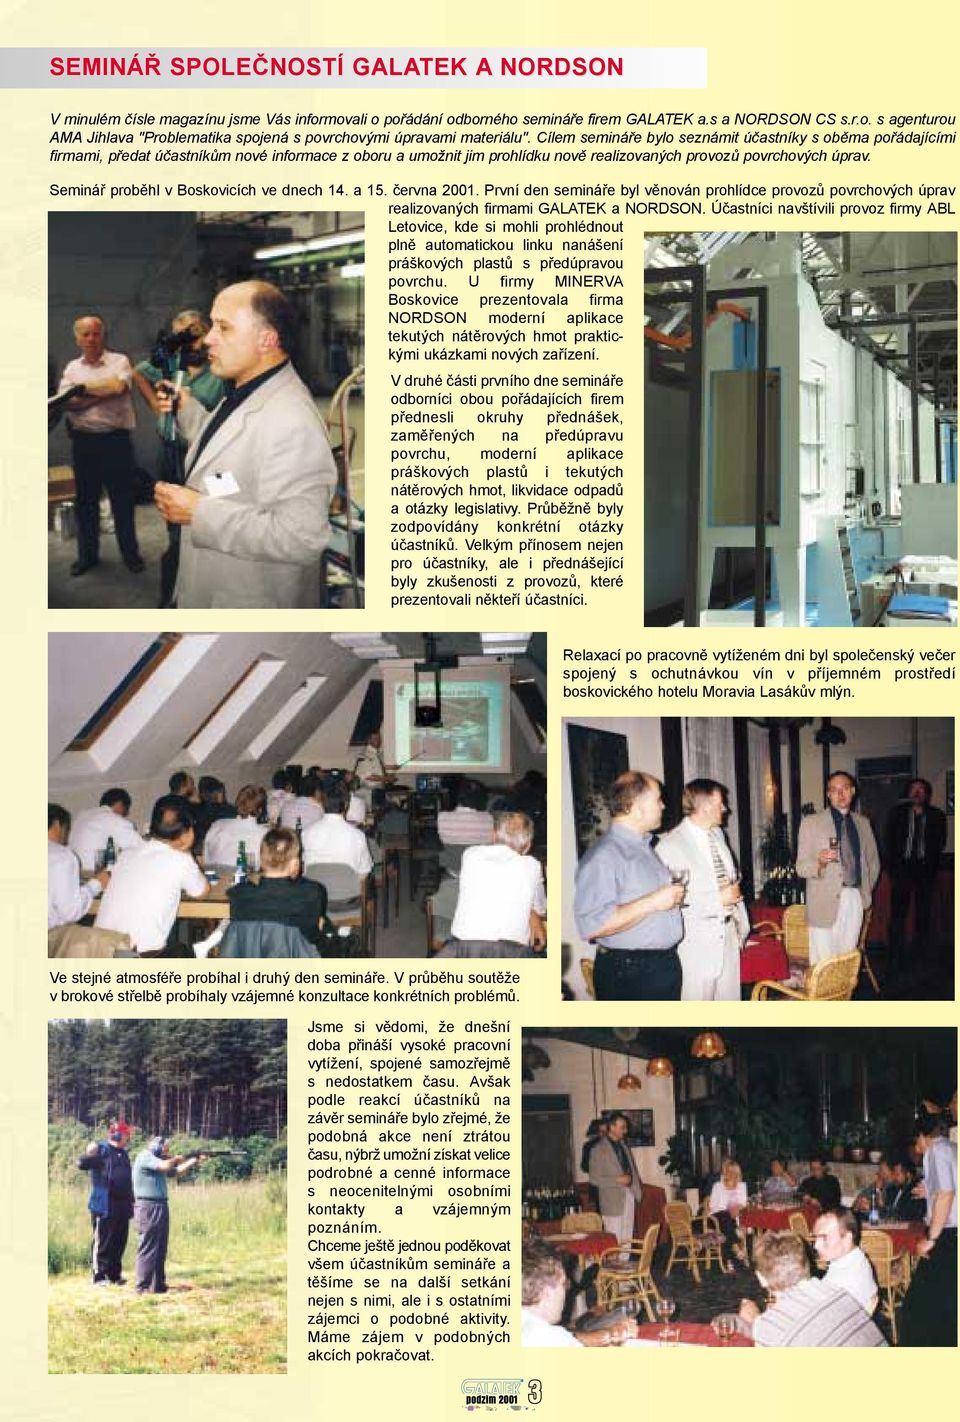 Seminář proběhl v Boskovicích ve dnech 14. a 15. června 2001. První den semináře byl věnován prohlídce provozů povrchových úprav realizovaných firmami GALATEK a NORDSON.